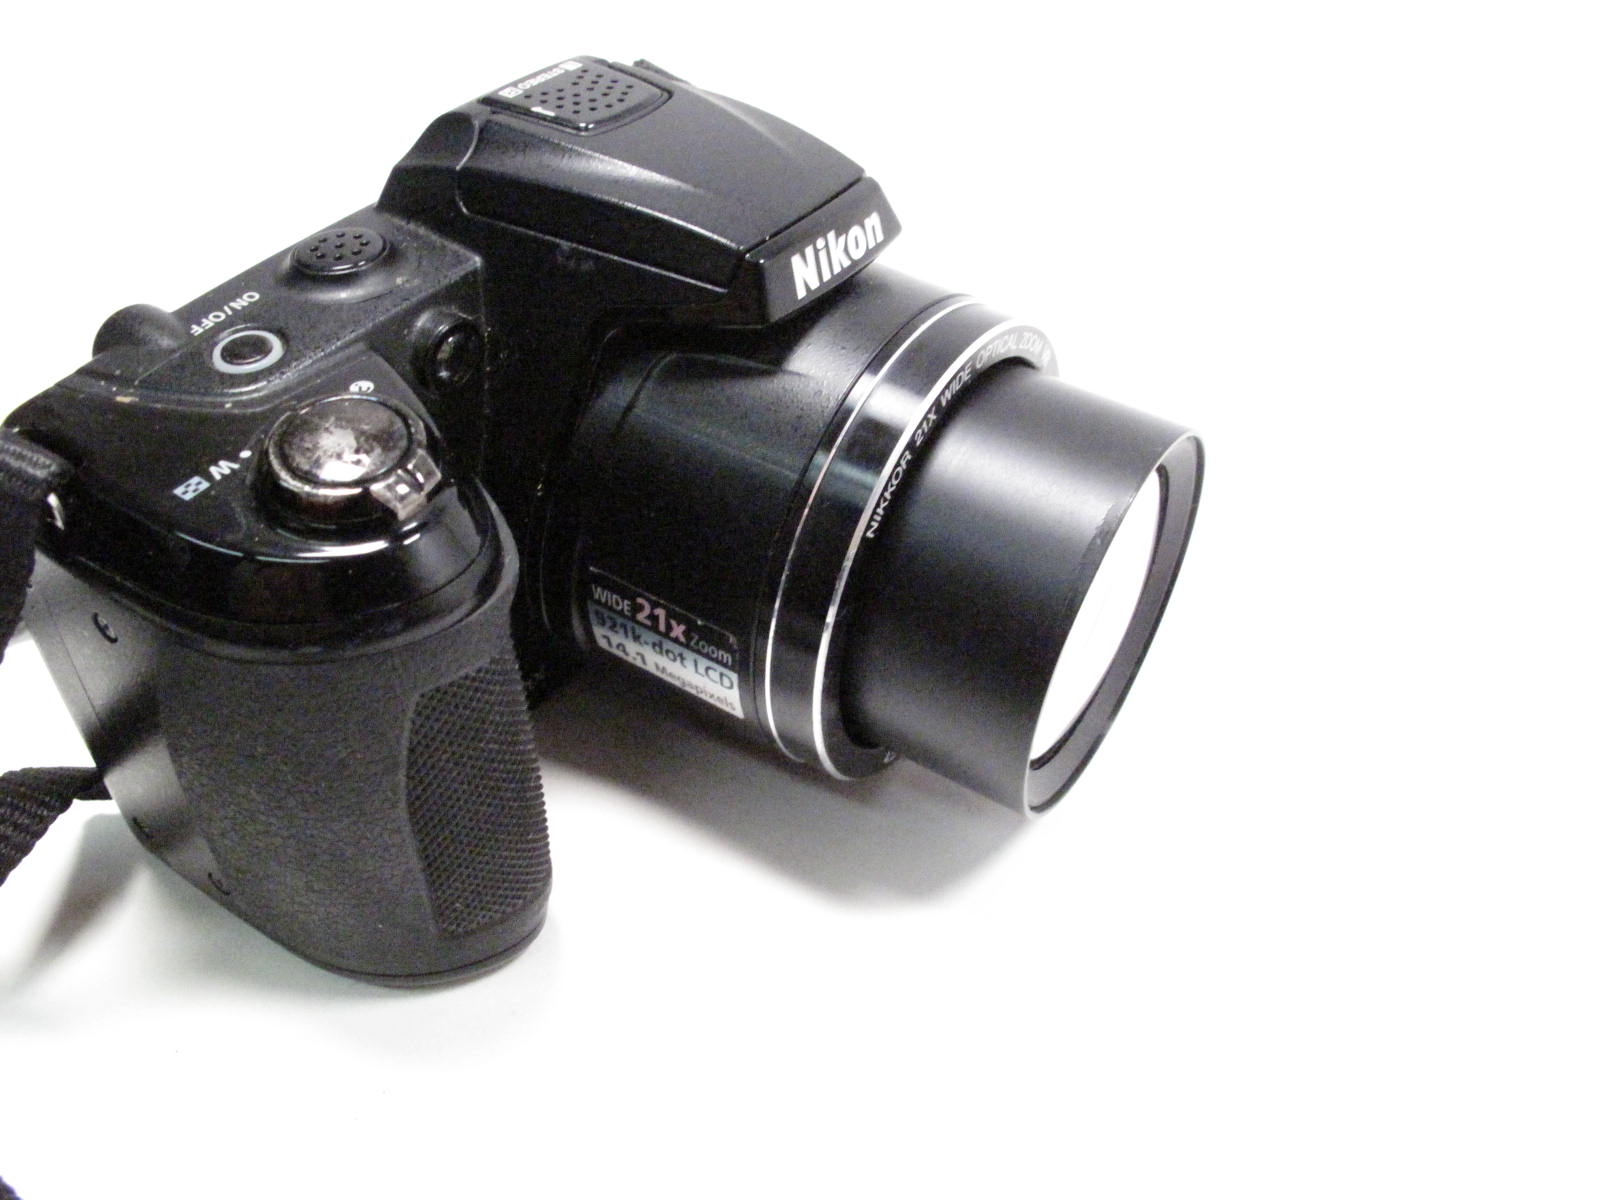 volgens veel plezier zoom Nikon Coolpix L1200 Digital Camera 14.1 MP 3" Display Black